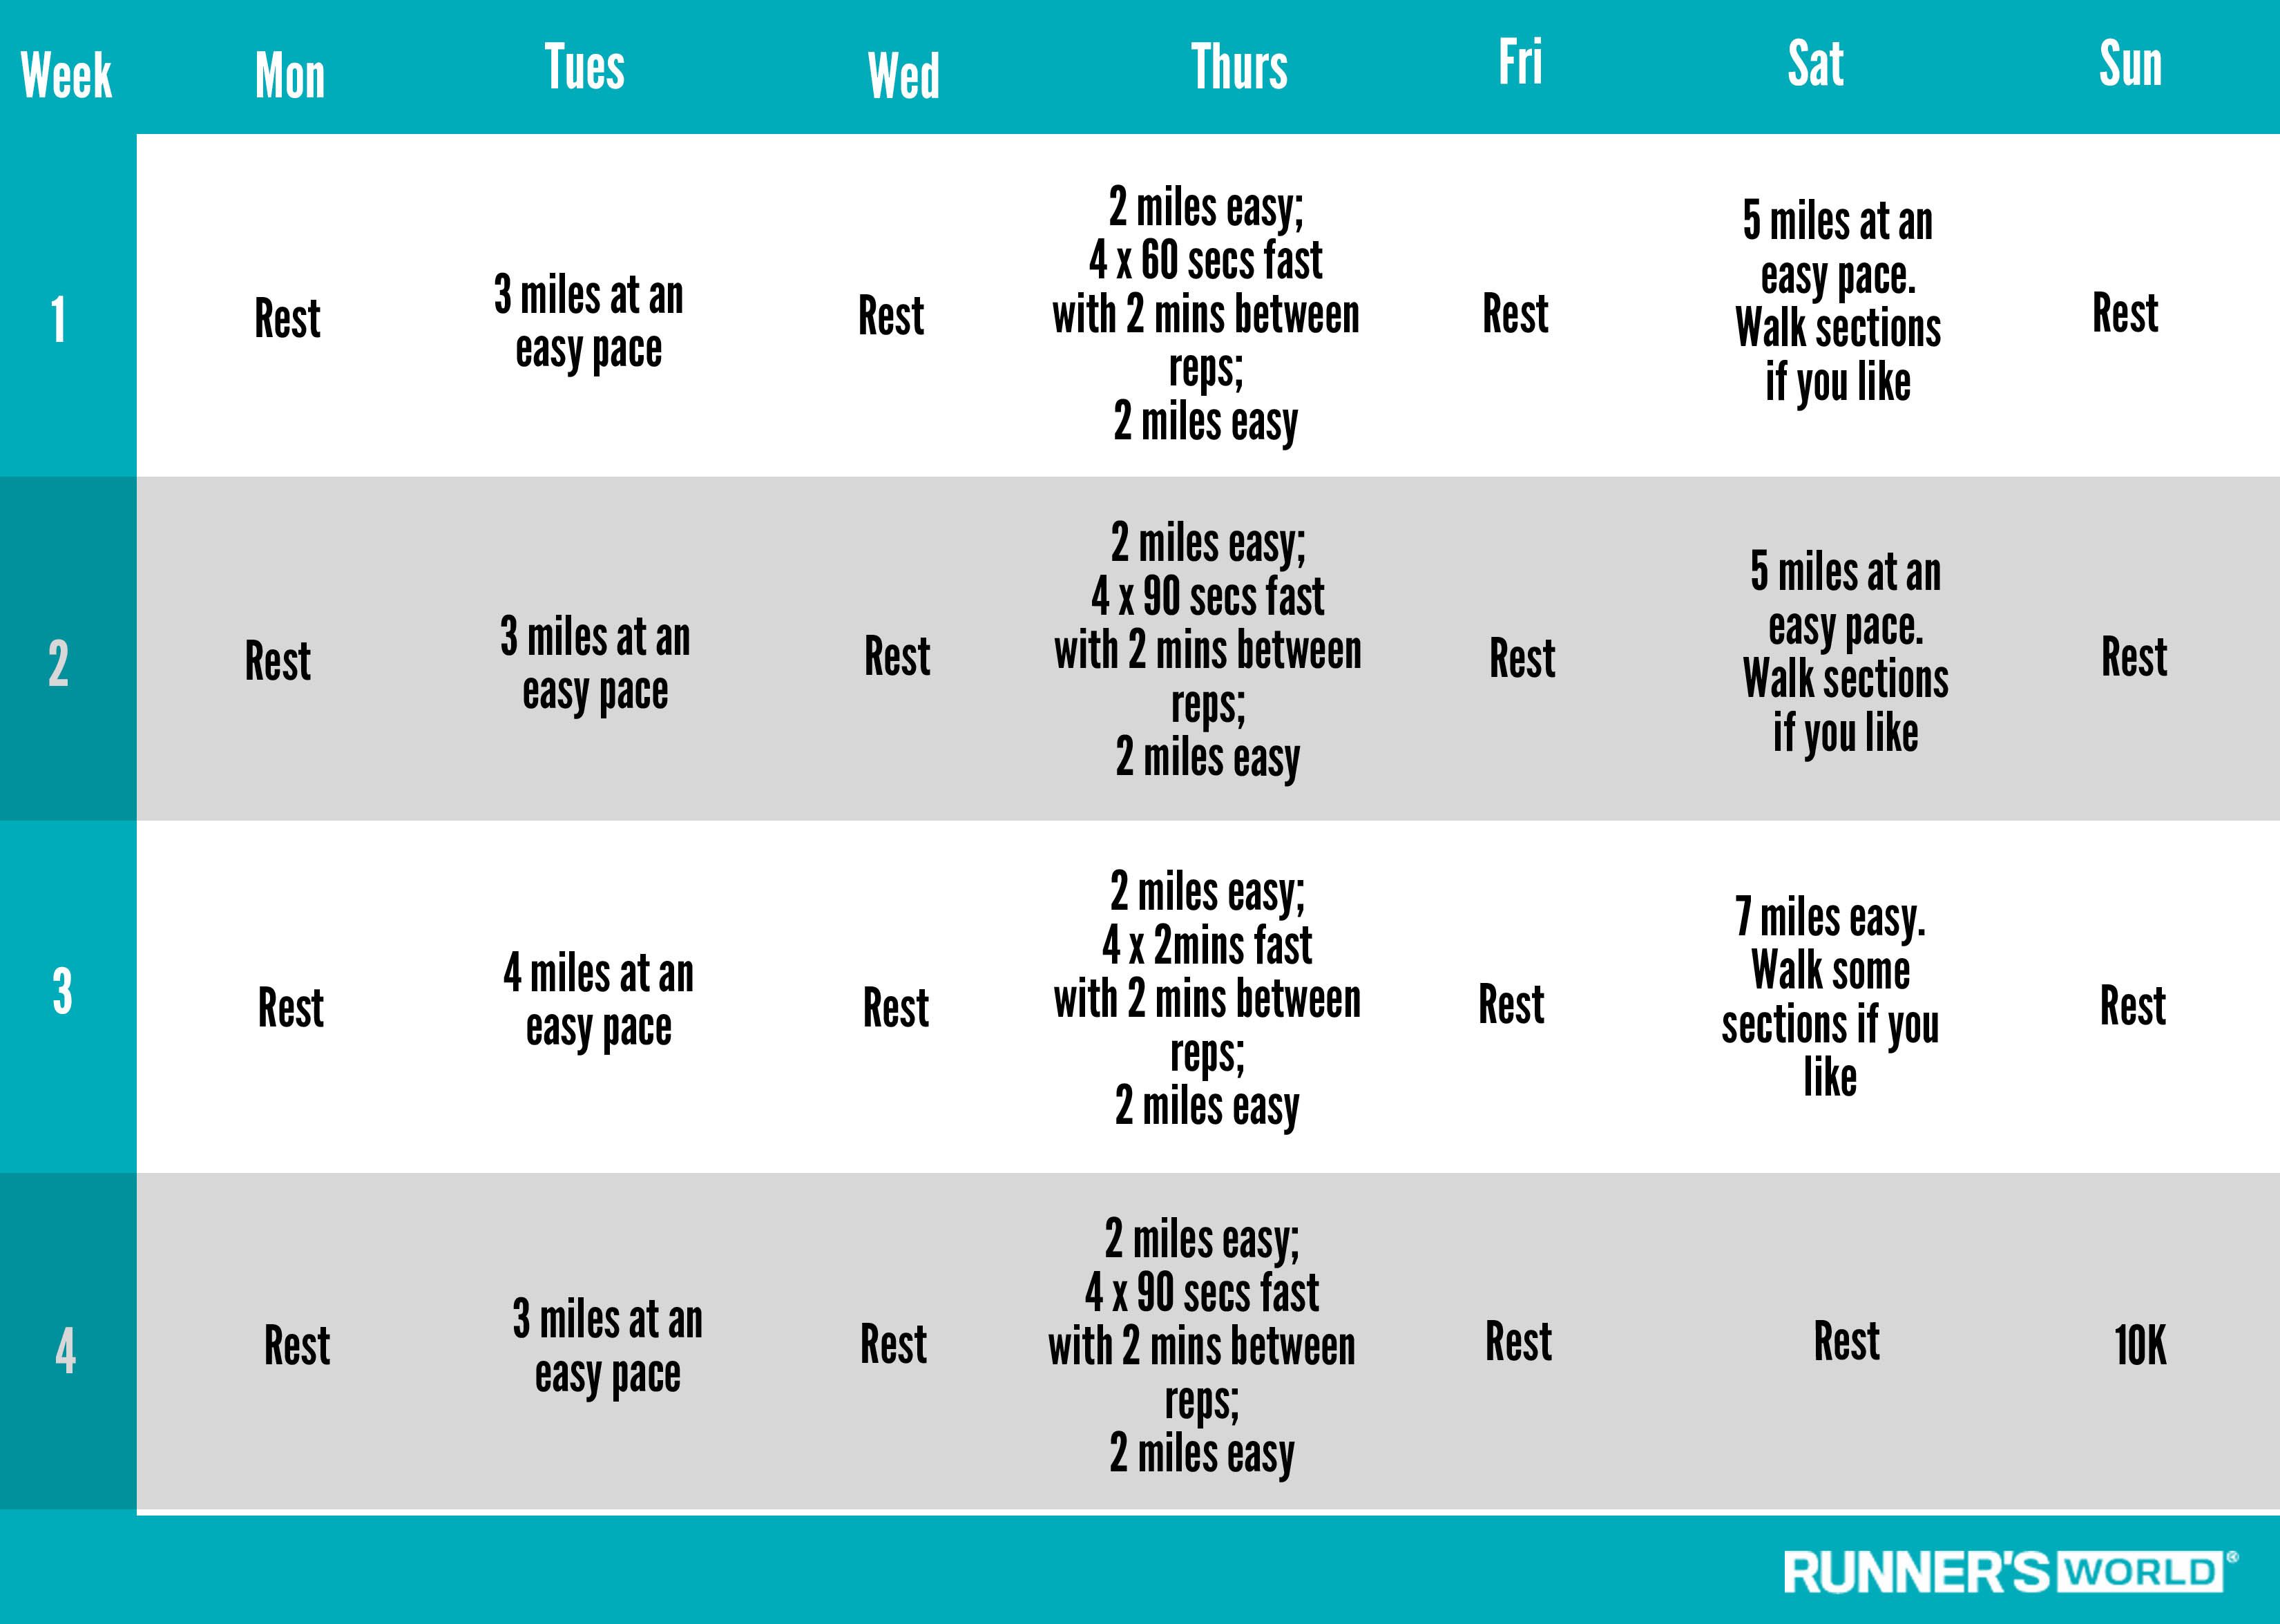 RW's 4-week 10K training plan, running 3 days a week